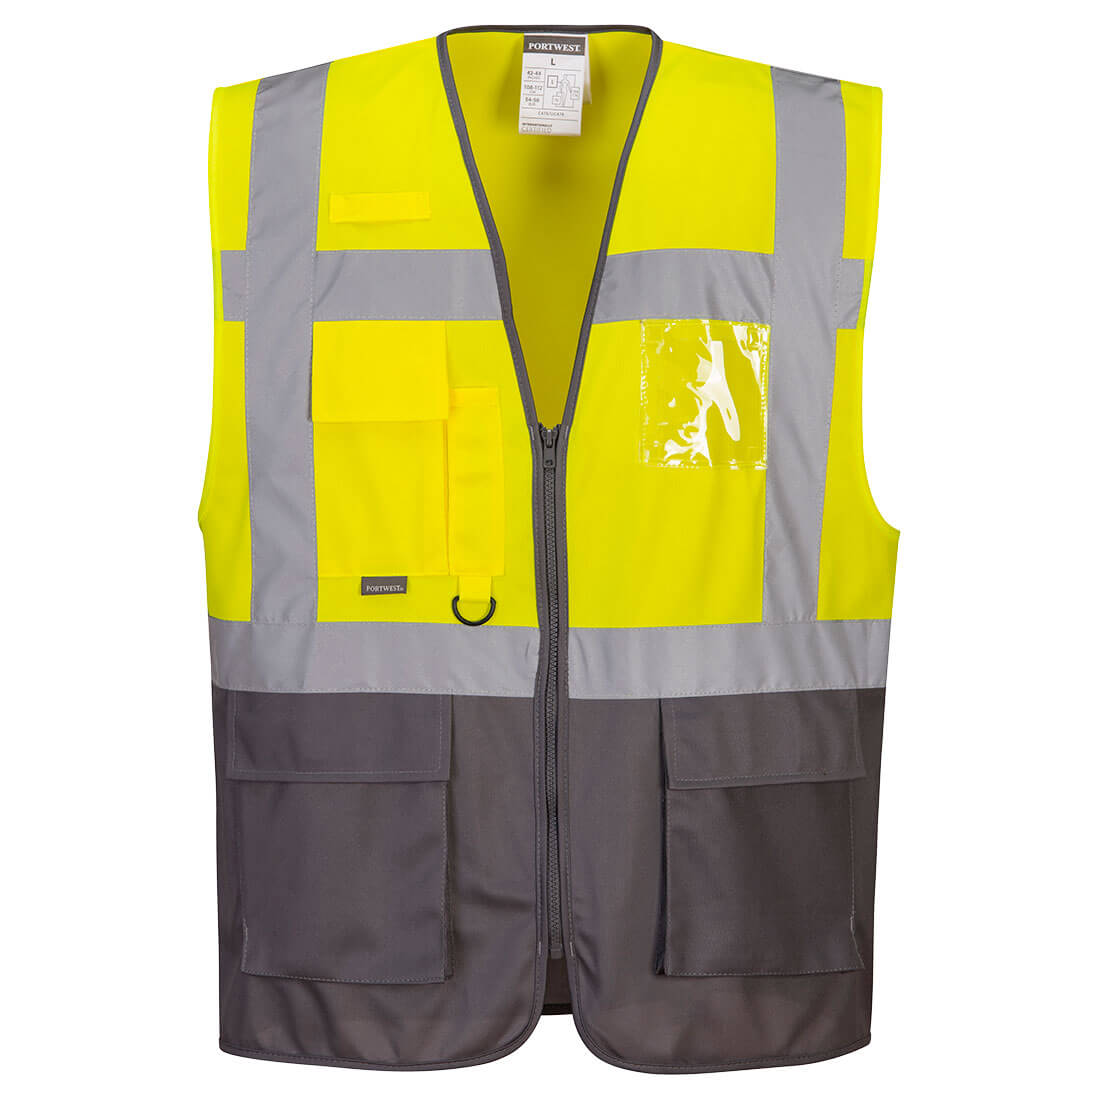 Warsaw Executive Vest Size XXXL Yellow/Grey